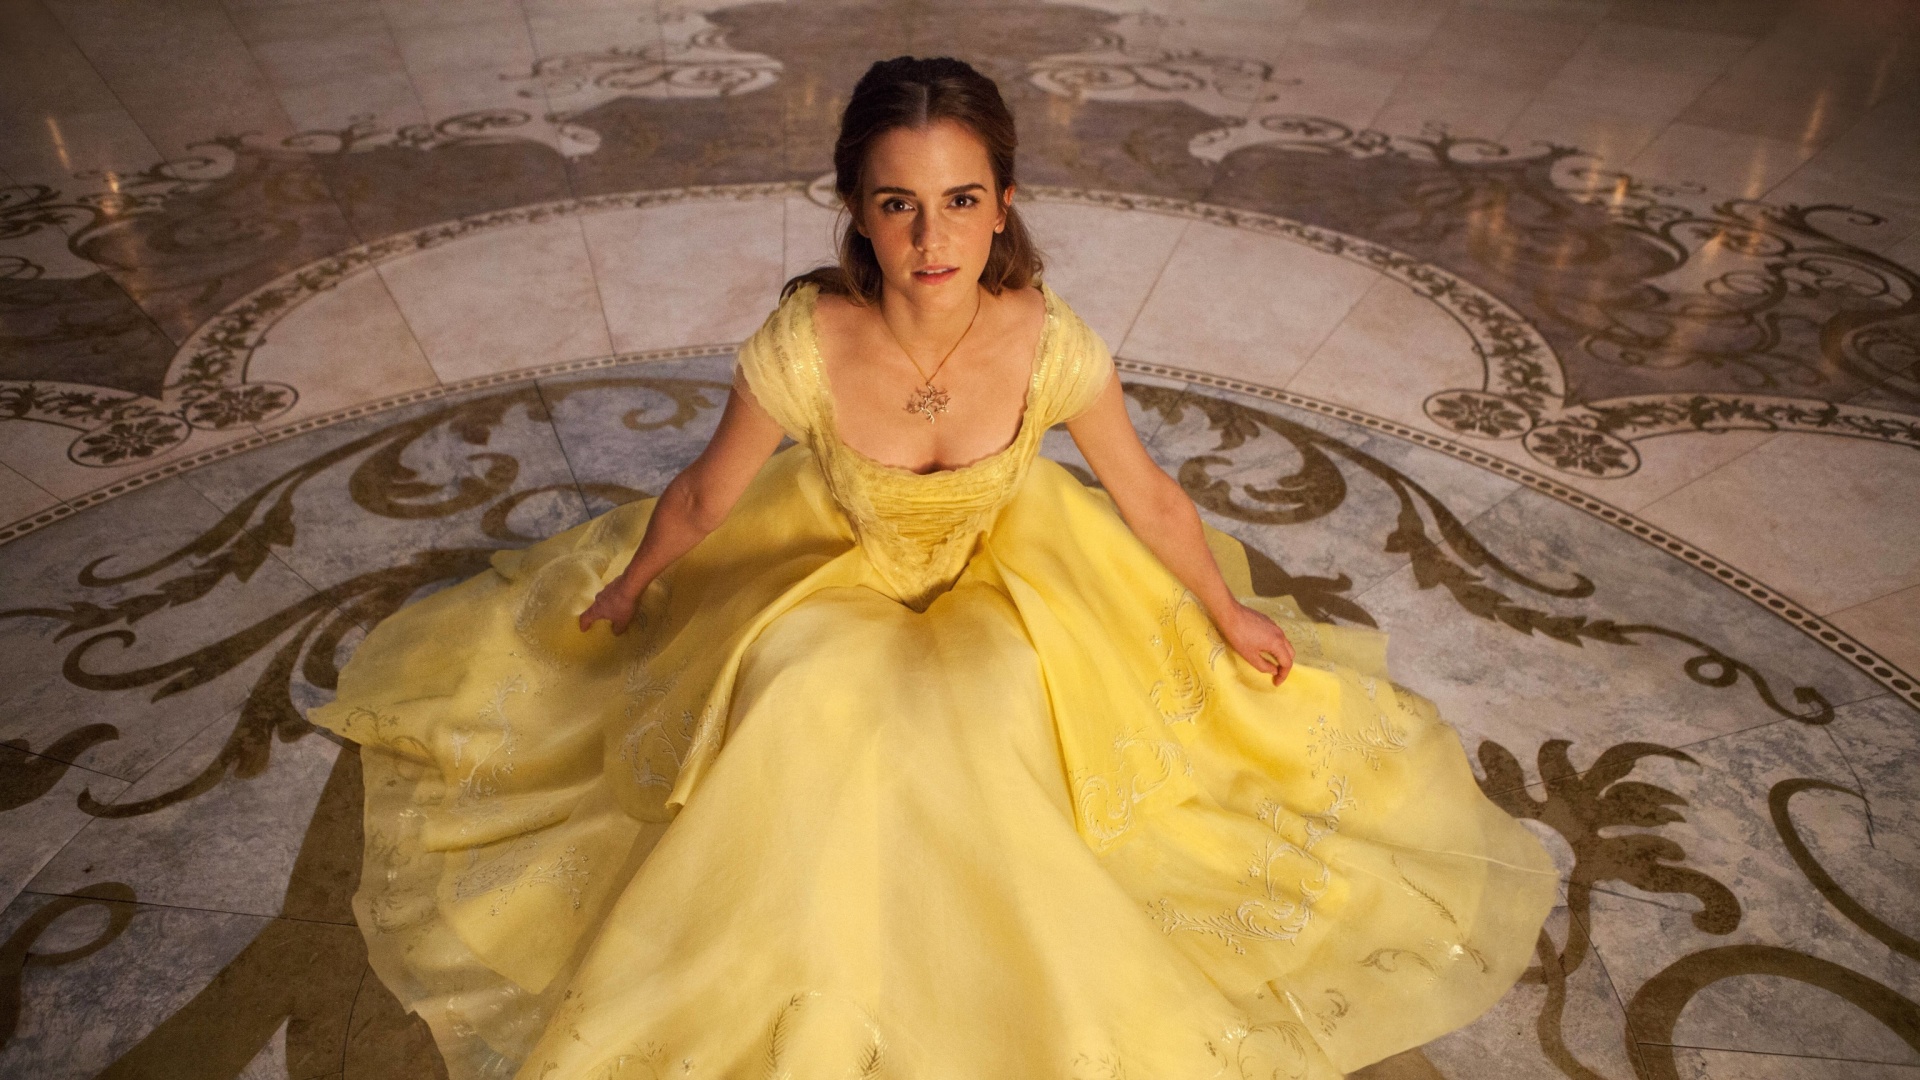 Обои Emma Watson in Beauty and the Beast 1920x1080